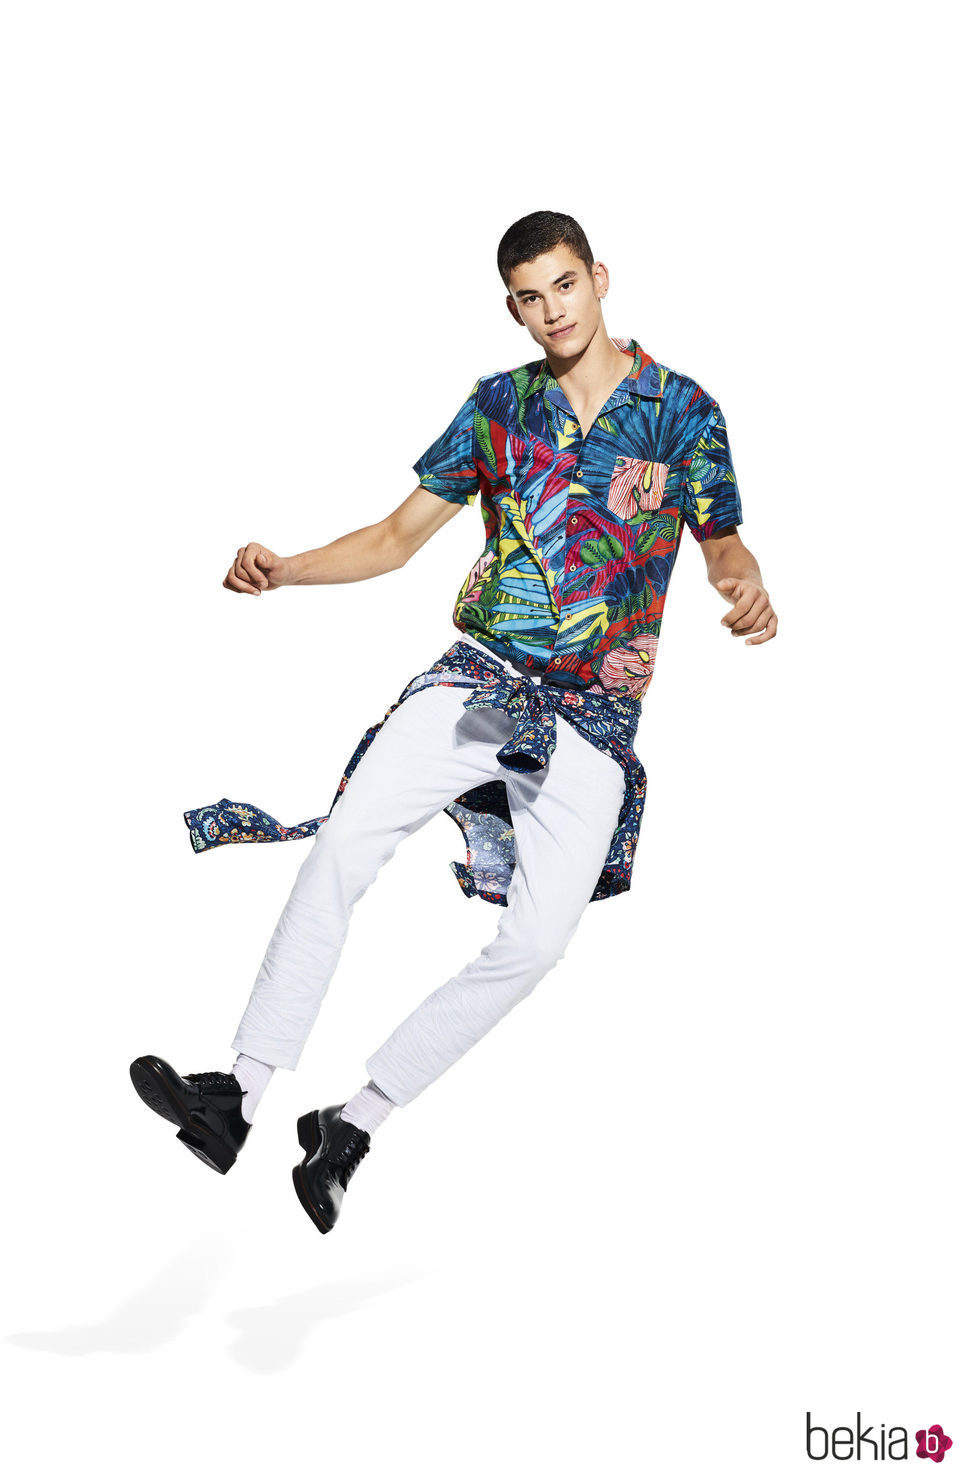 Camisa de hombre con estampados tropicales de la colección 'Unexpected' de Desigual para la temporada primavera/verano 2018